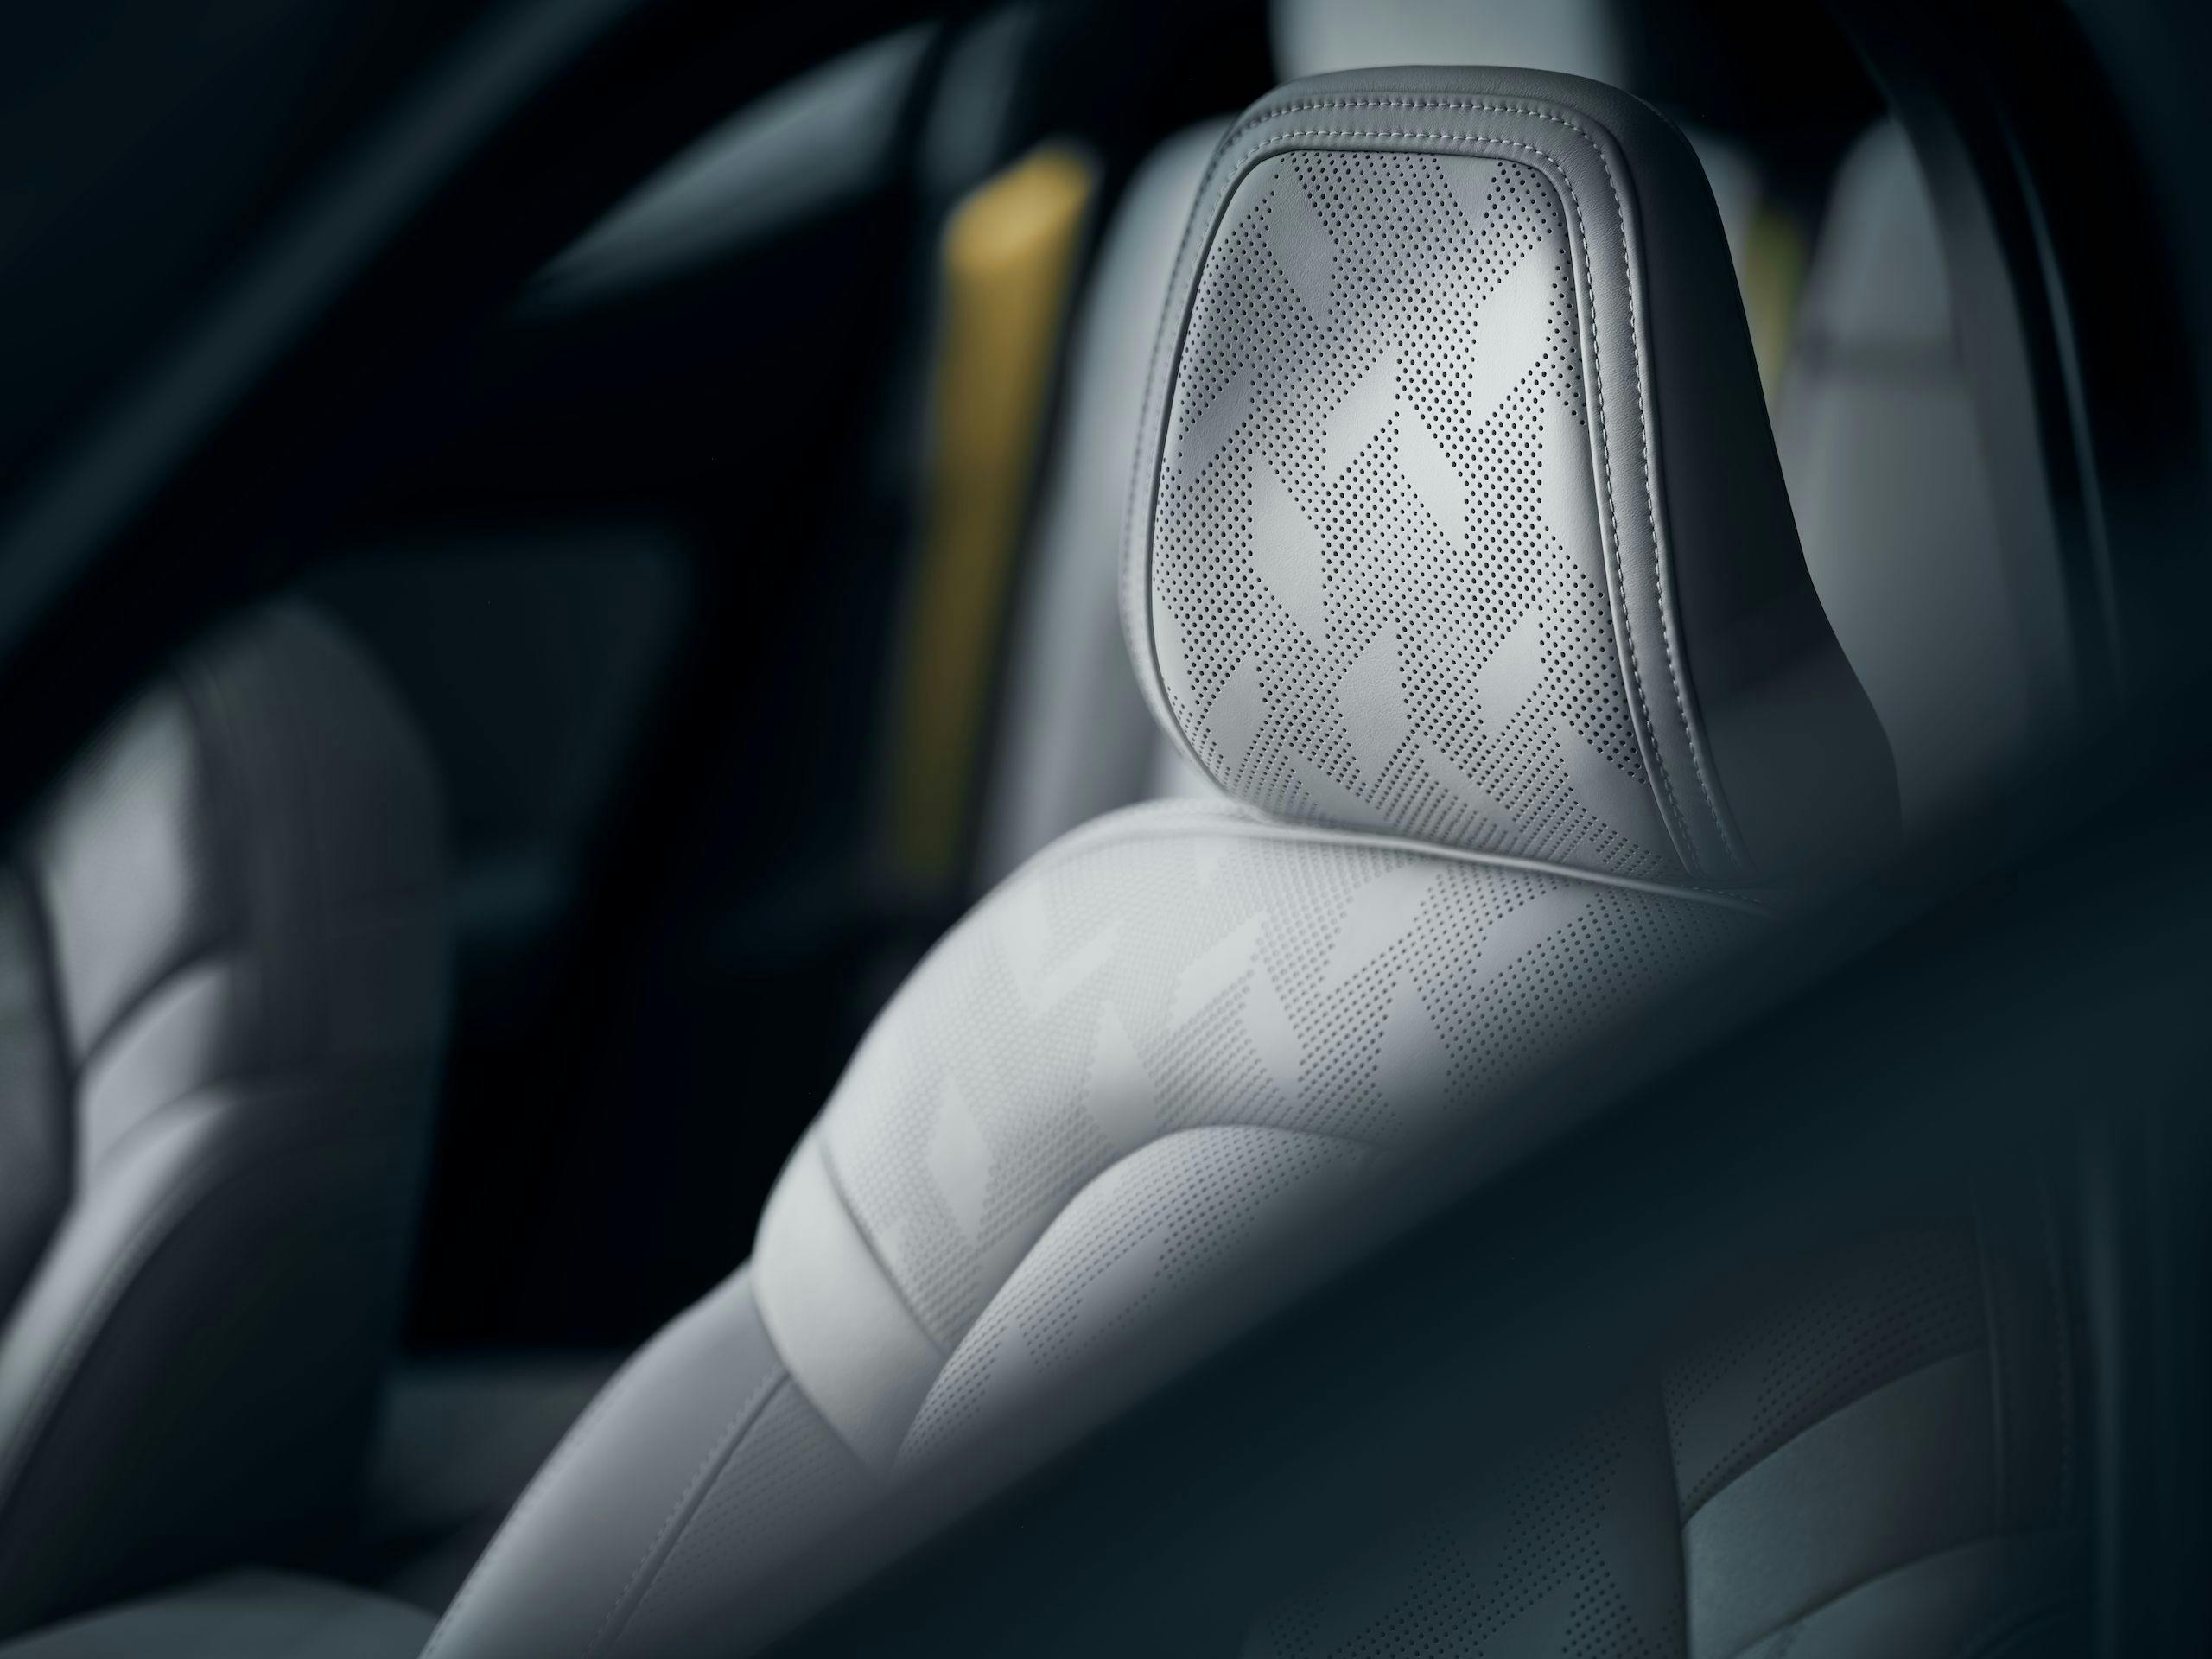 Polestar interior seat headrest detail